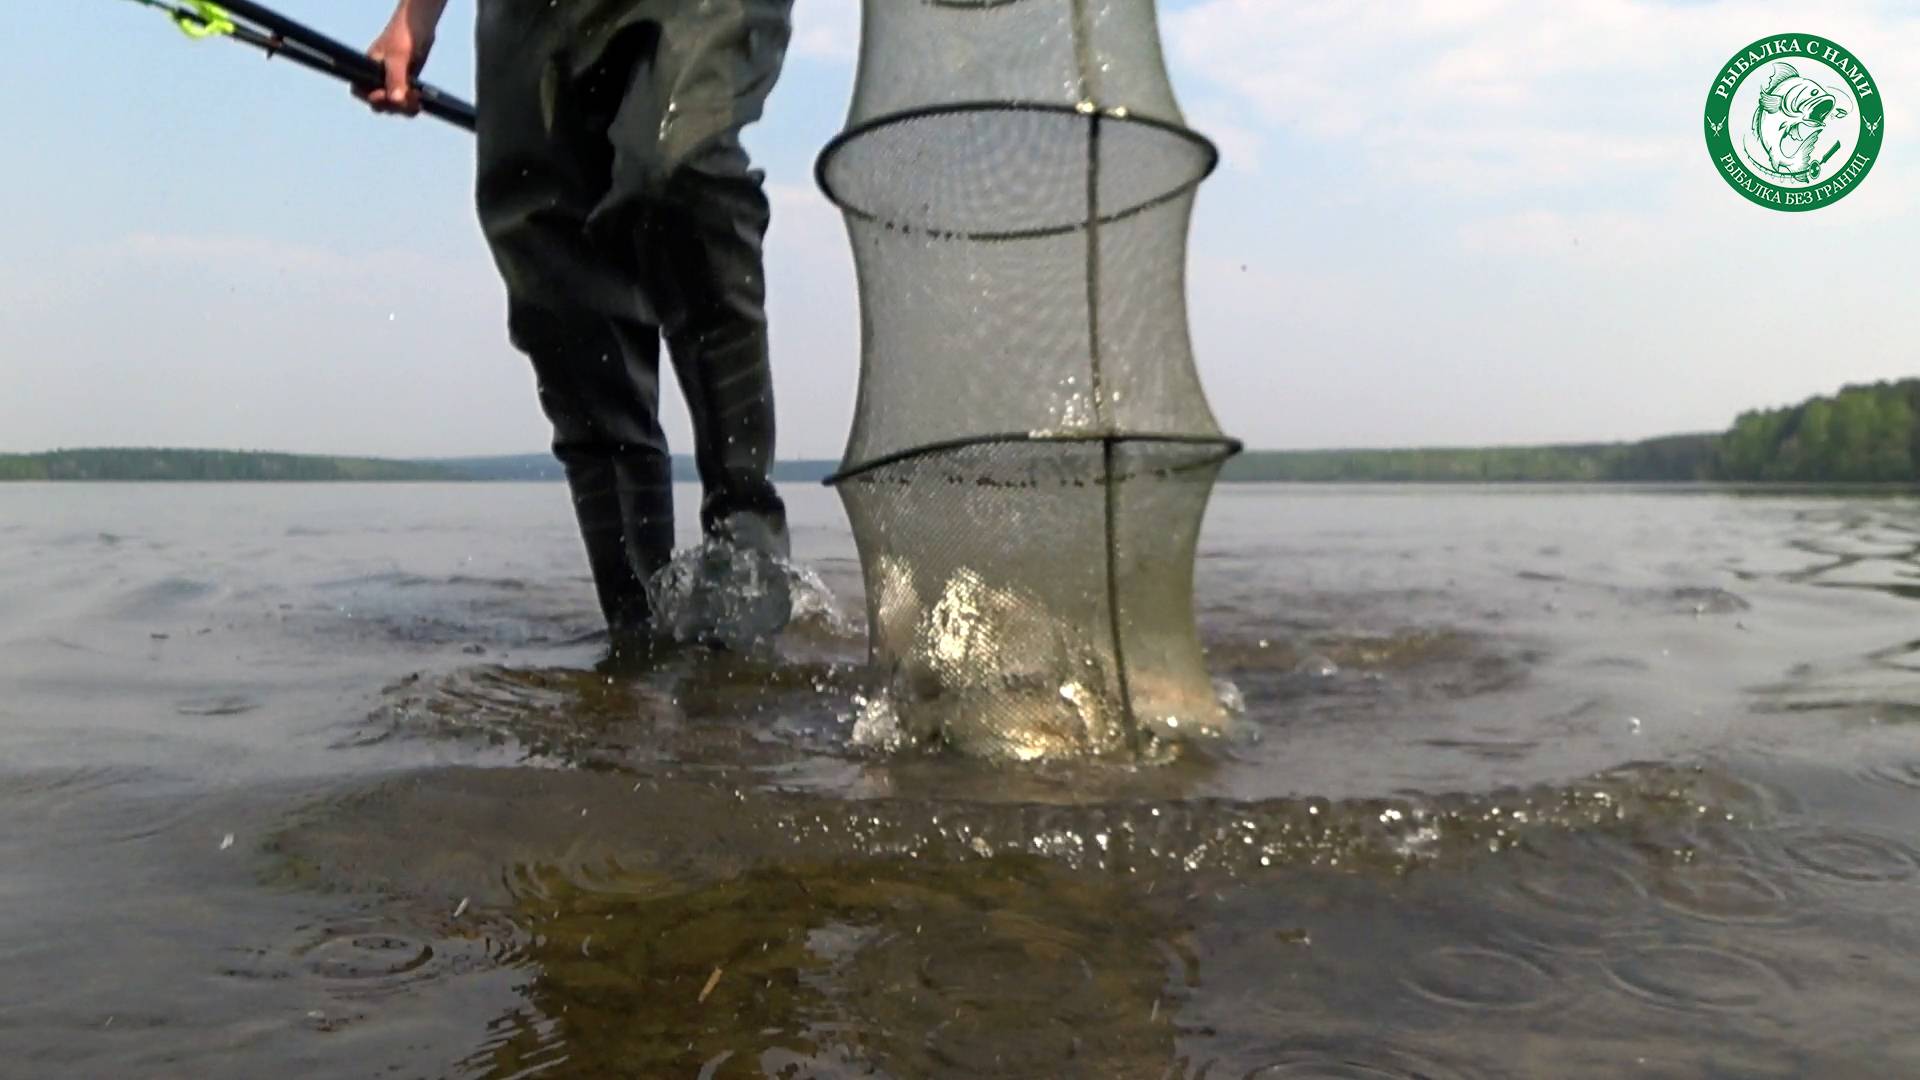 Рыбалка в свердловской области: наиболее уловистые места